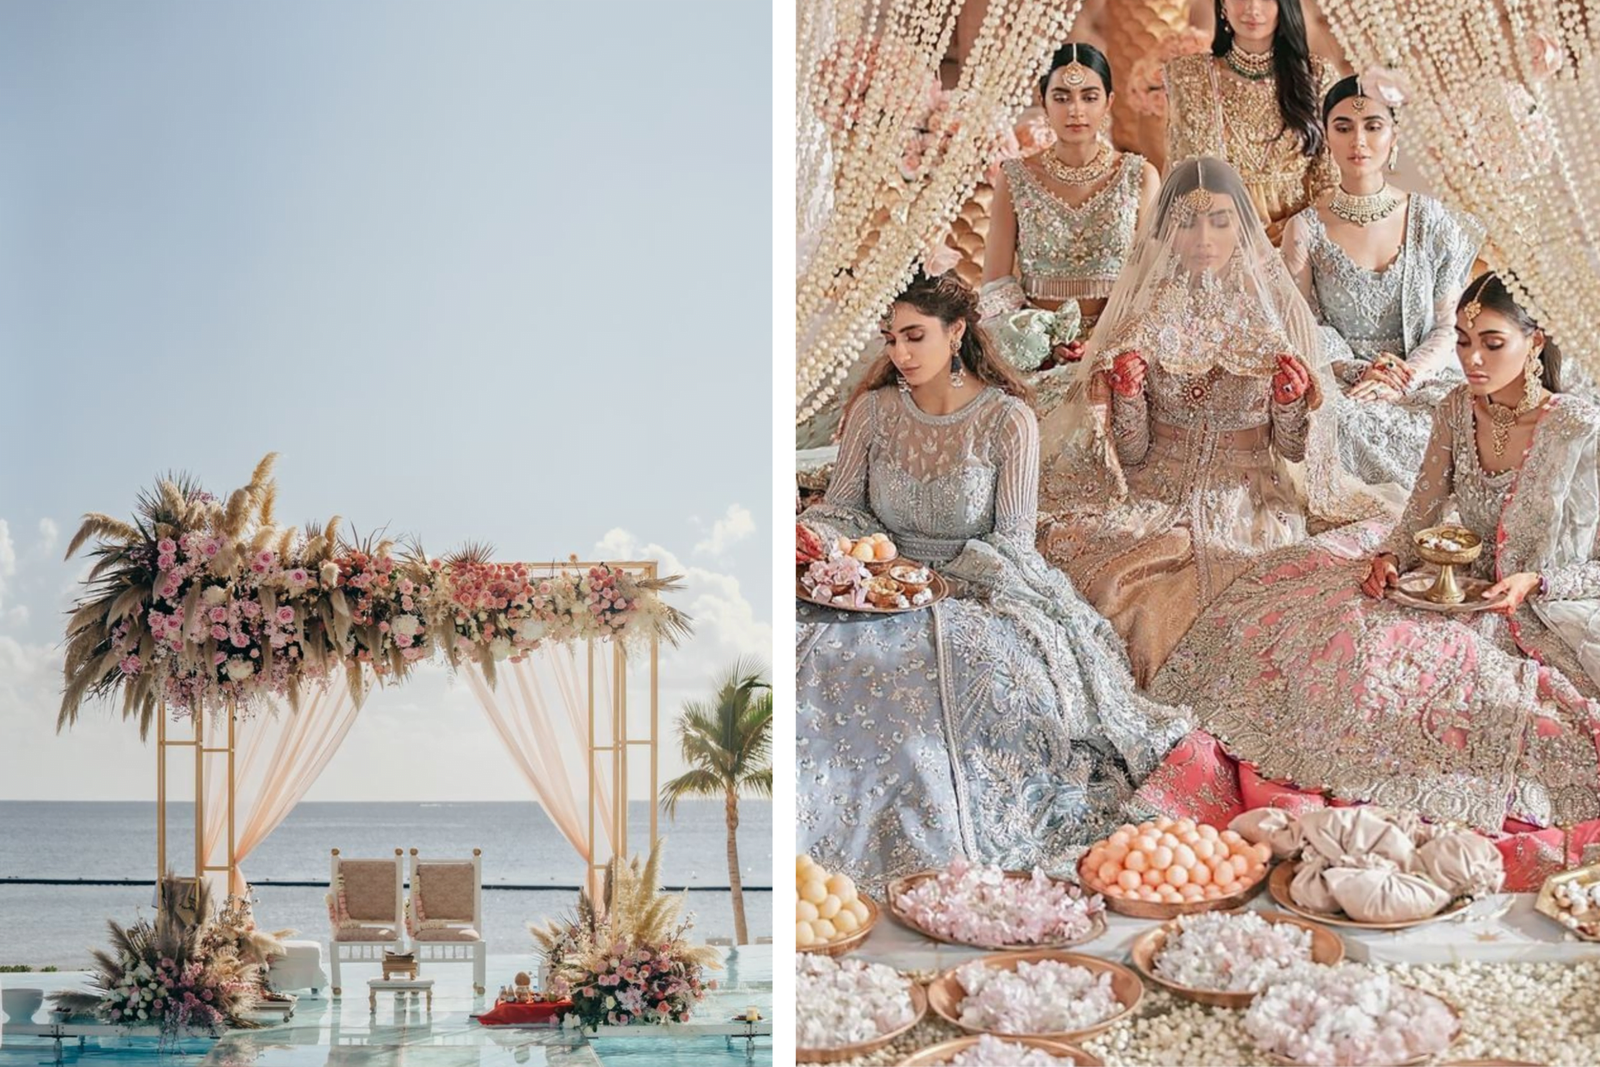 Indian Brides Versus Pakistani Brides | by Yash Tanwar | Medium